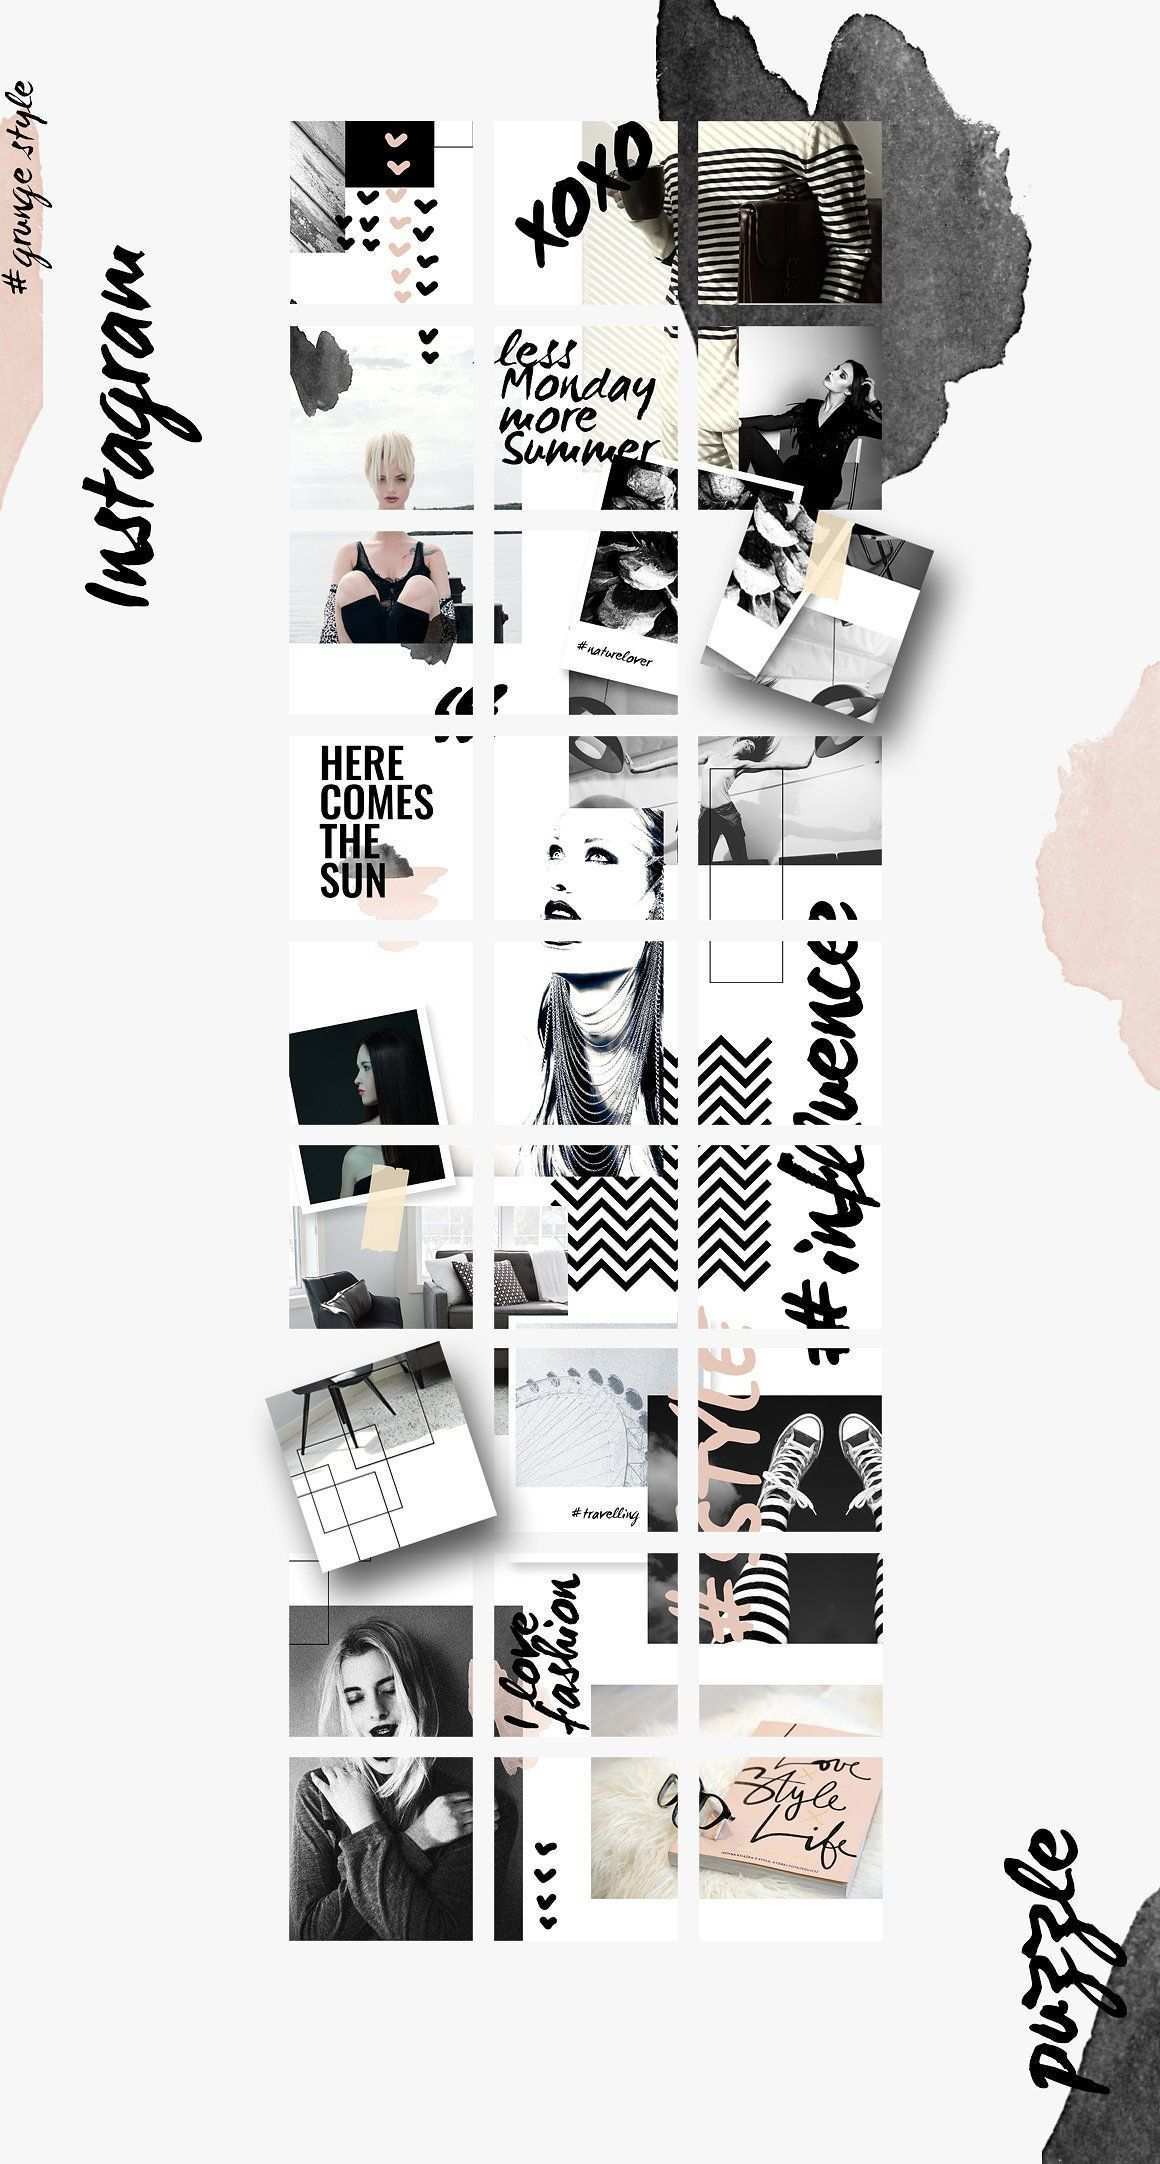 Instagram Puzzle Vorlage Grunge Von Creativefolks Auf Creative Market Instagra In 2020 Instagram Design Stimmungstafel Instagram